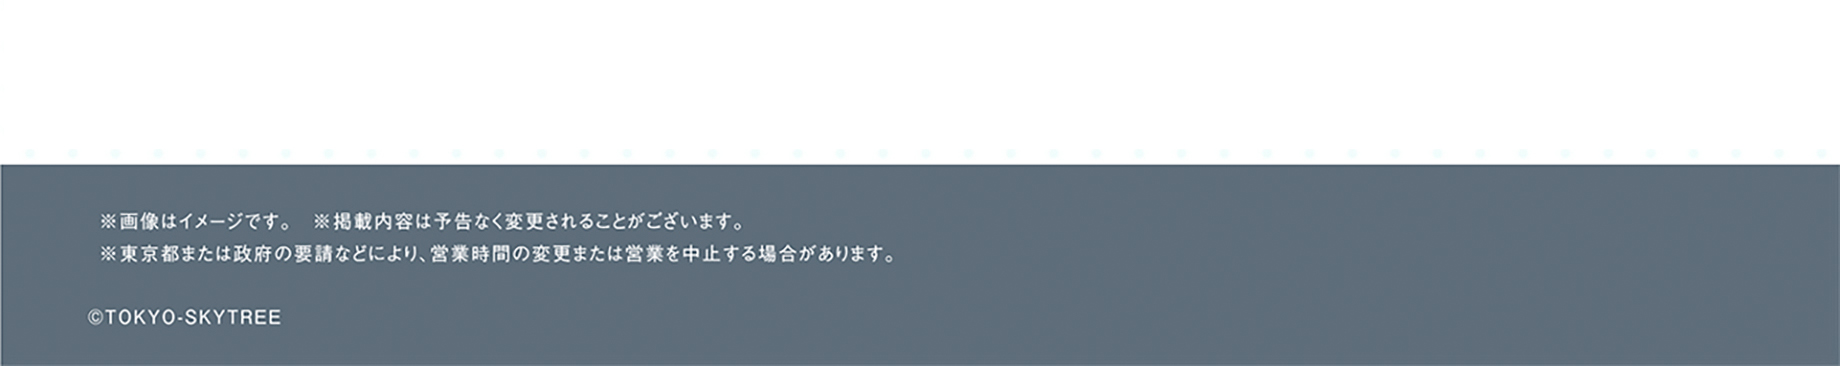 東京スカイツリー®世界一で推しＦＥＳ！ ～昭和・平成・令和の推し活、ぜーんぶ応援！～